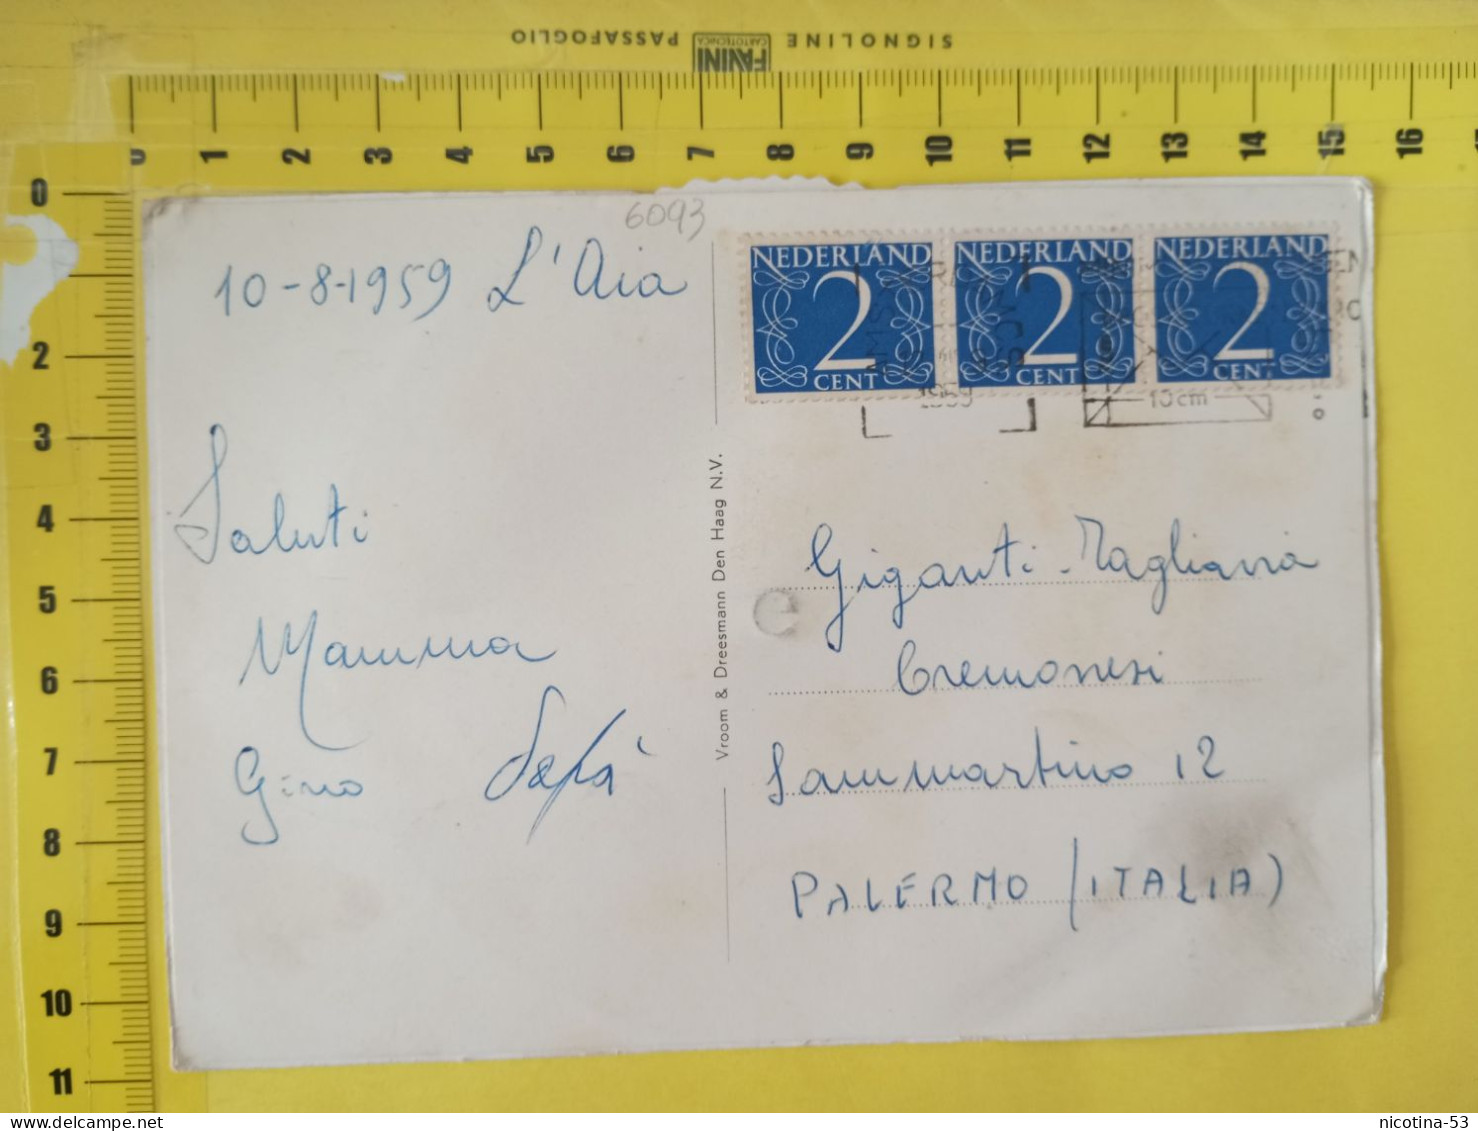 CT-06093- GROETEN UIT - DEN HAAG SCHEVENINGEN - 9 VEDUTE VIAGGIATA 1959 PER PALERMO - Gruss Aus.../ Gruesse Aus...